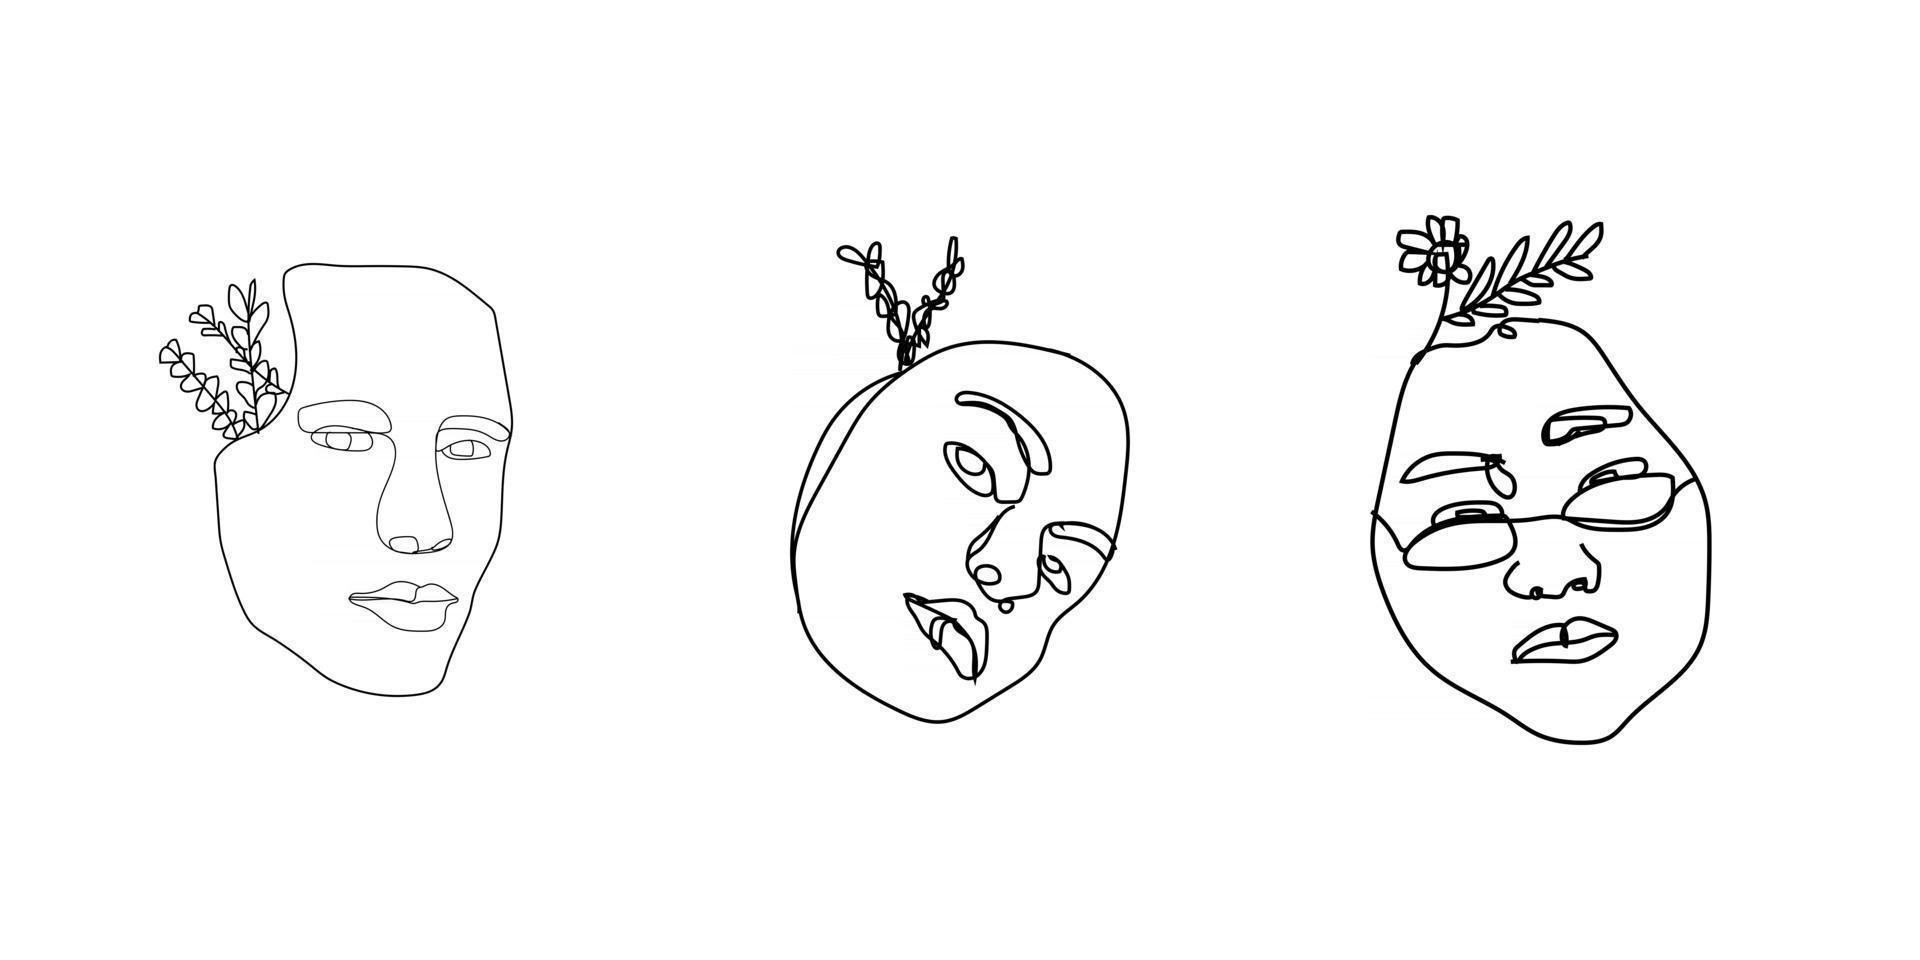 visages de femmes dans un style d'art en ligne avec des fleurs et des feuilles dessin au trait continu dans un style élégant pour des impressions de tatouages affiches cartes textiles, etc. vecteur